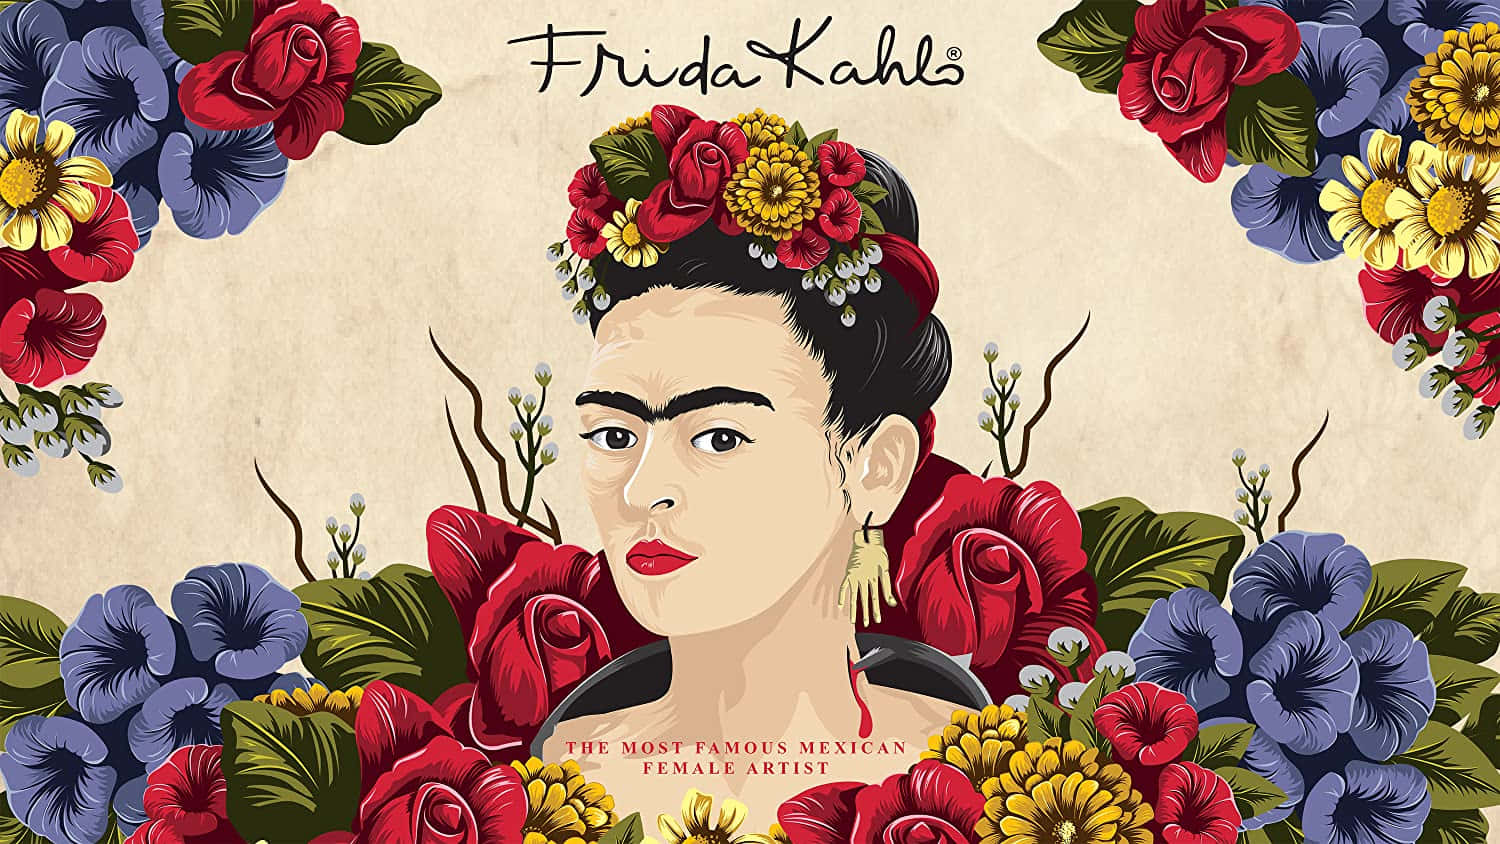 Frida kahlo poster - Frida Kahlo